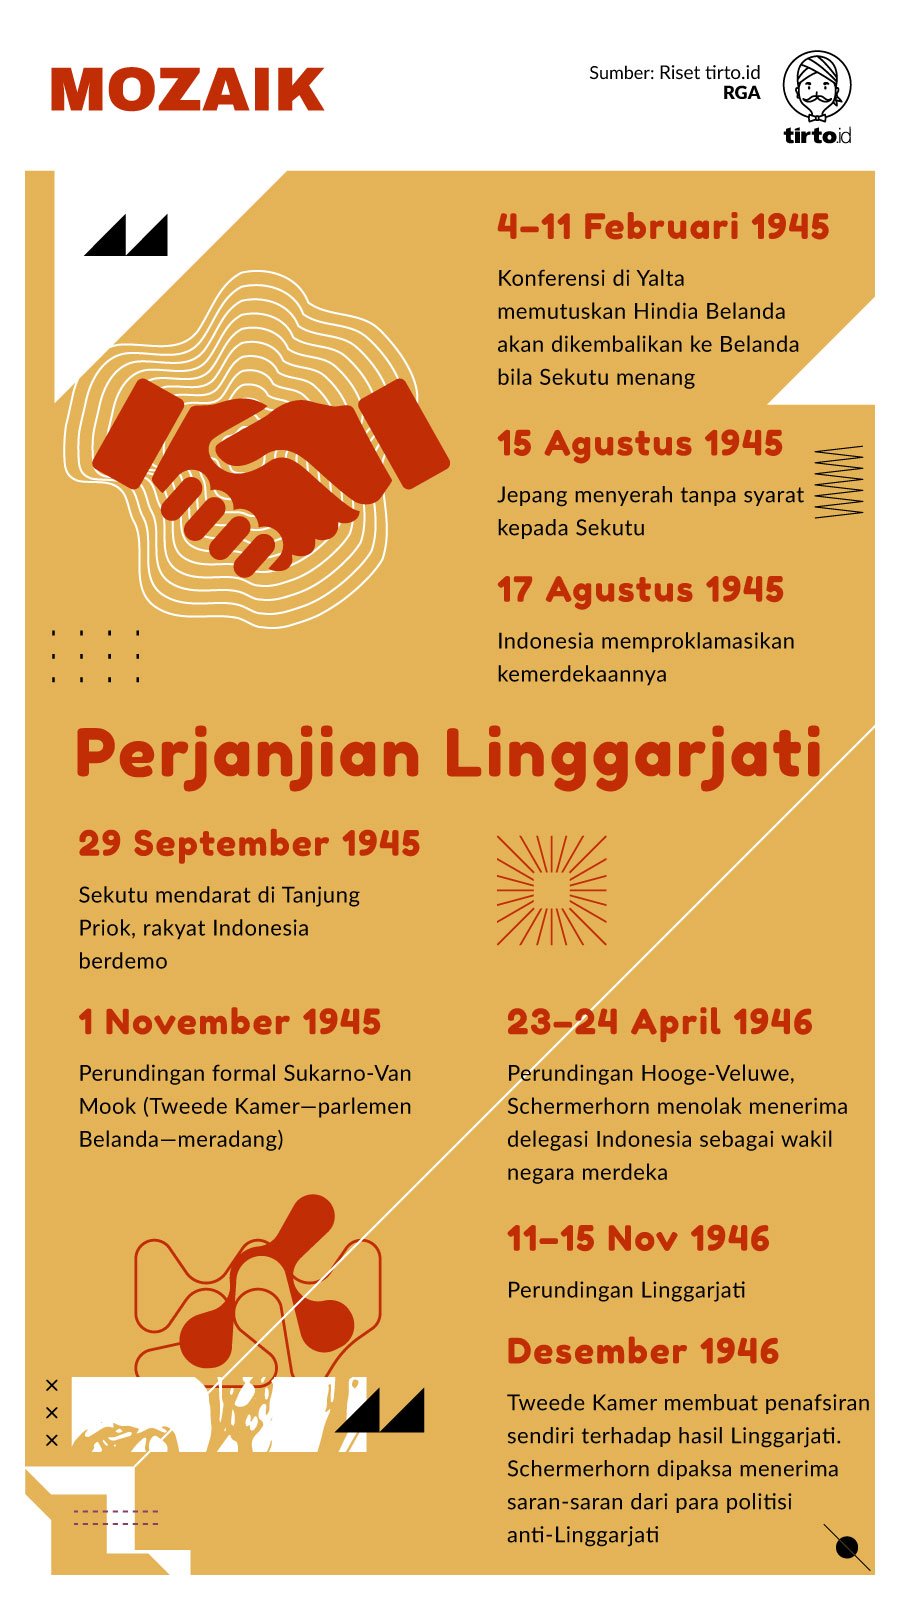 Infografik Mozaik Perjanjian Linggarjati